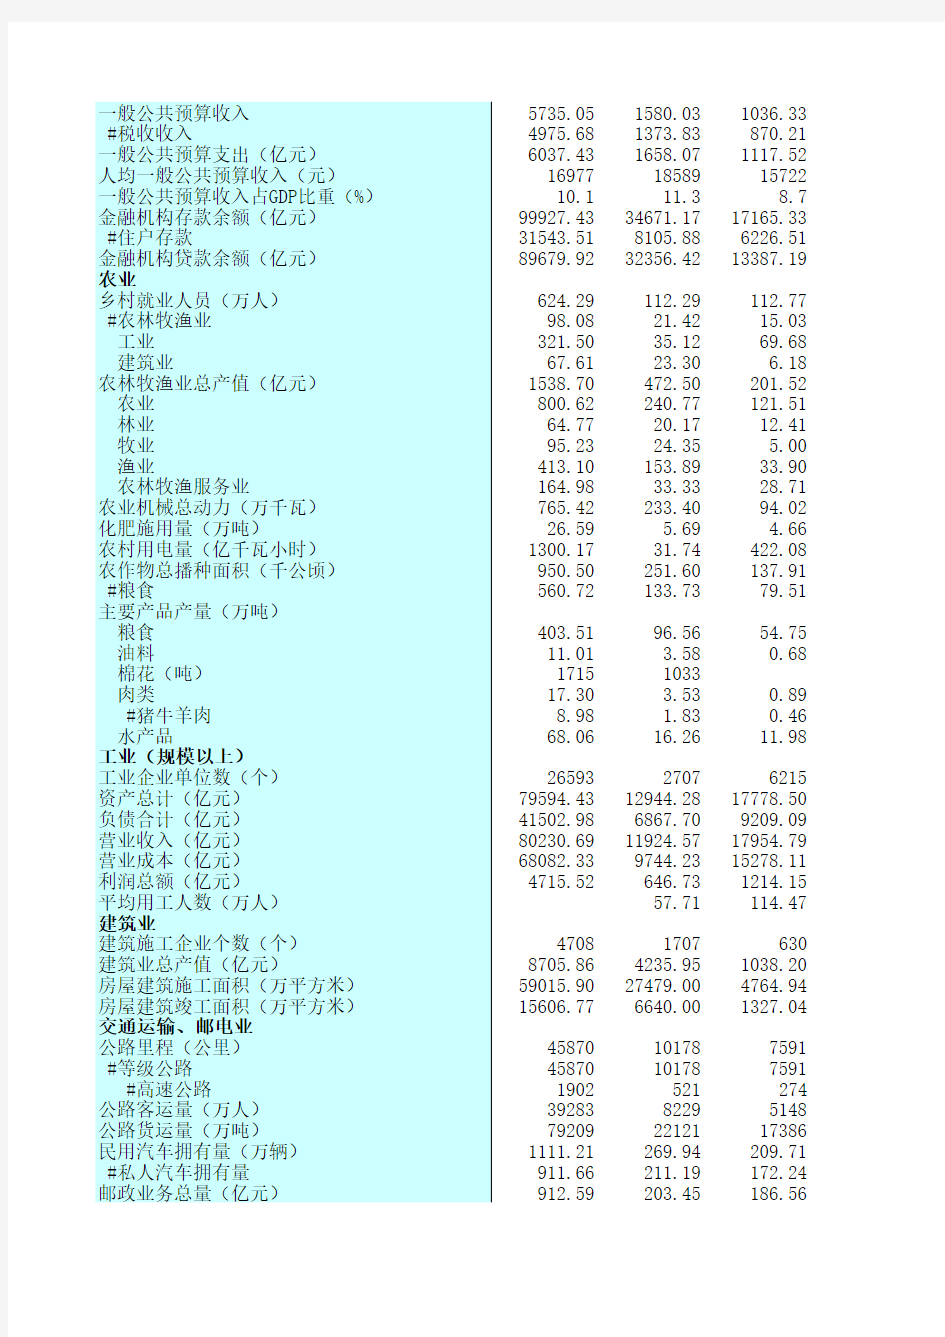 江苏统计年鉴2020社会经济发展指标：三大区域经济社会基本情况(2019年)